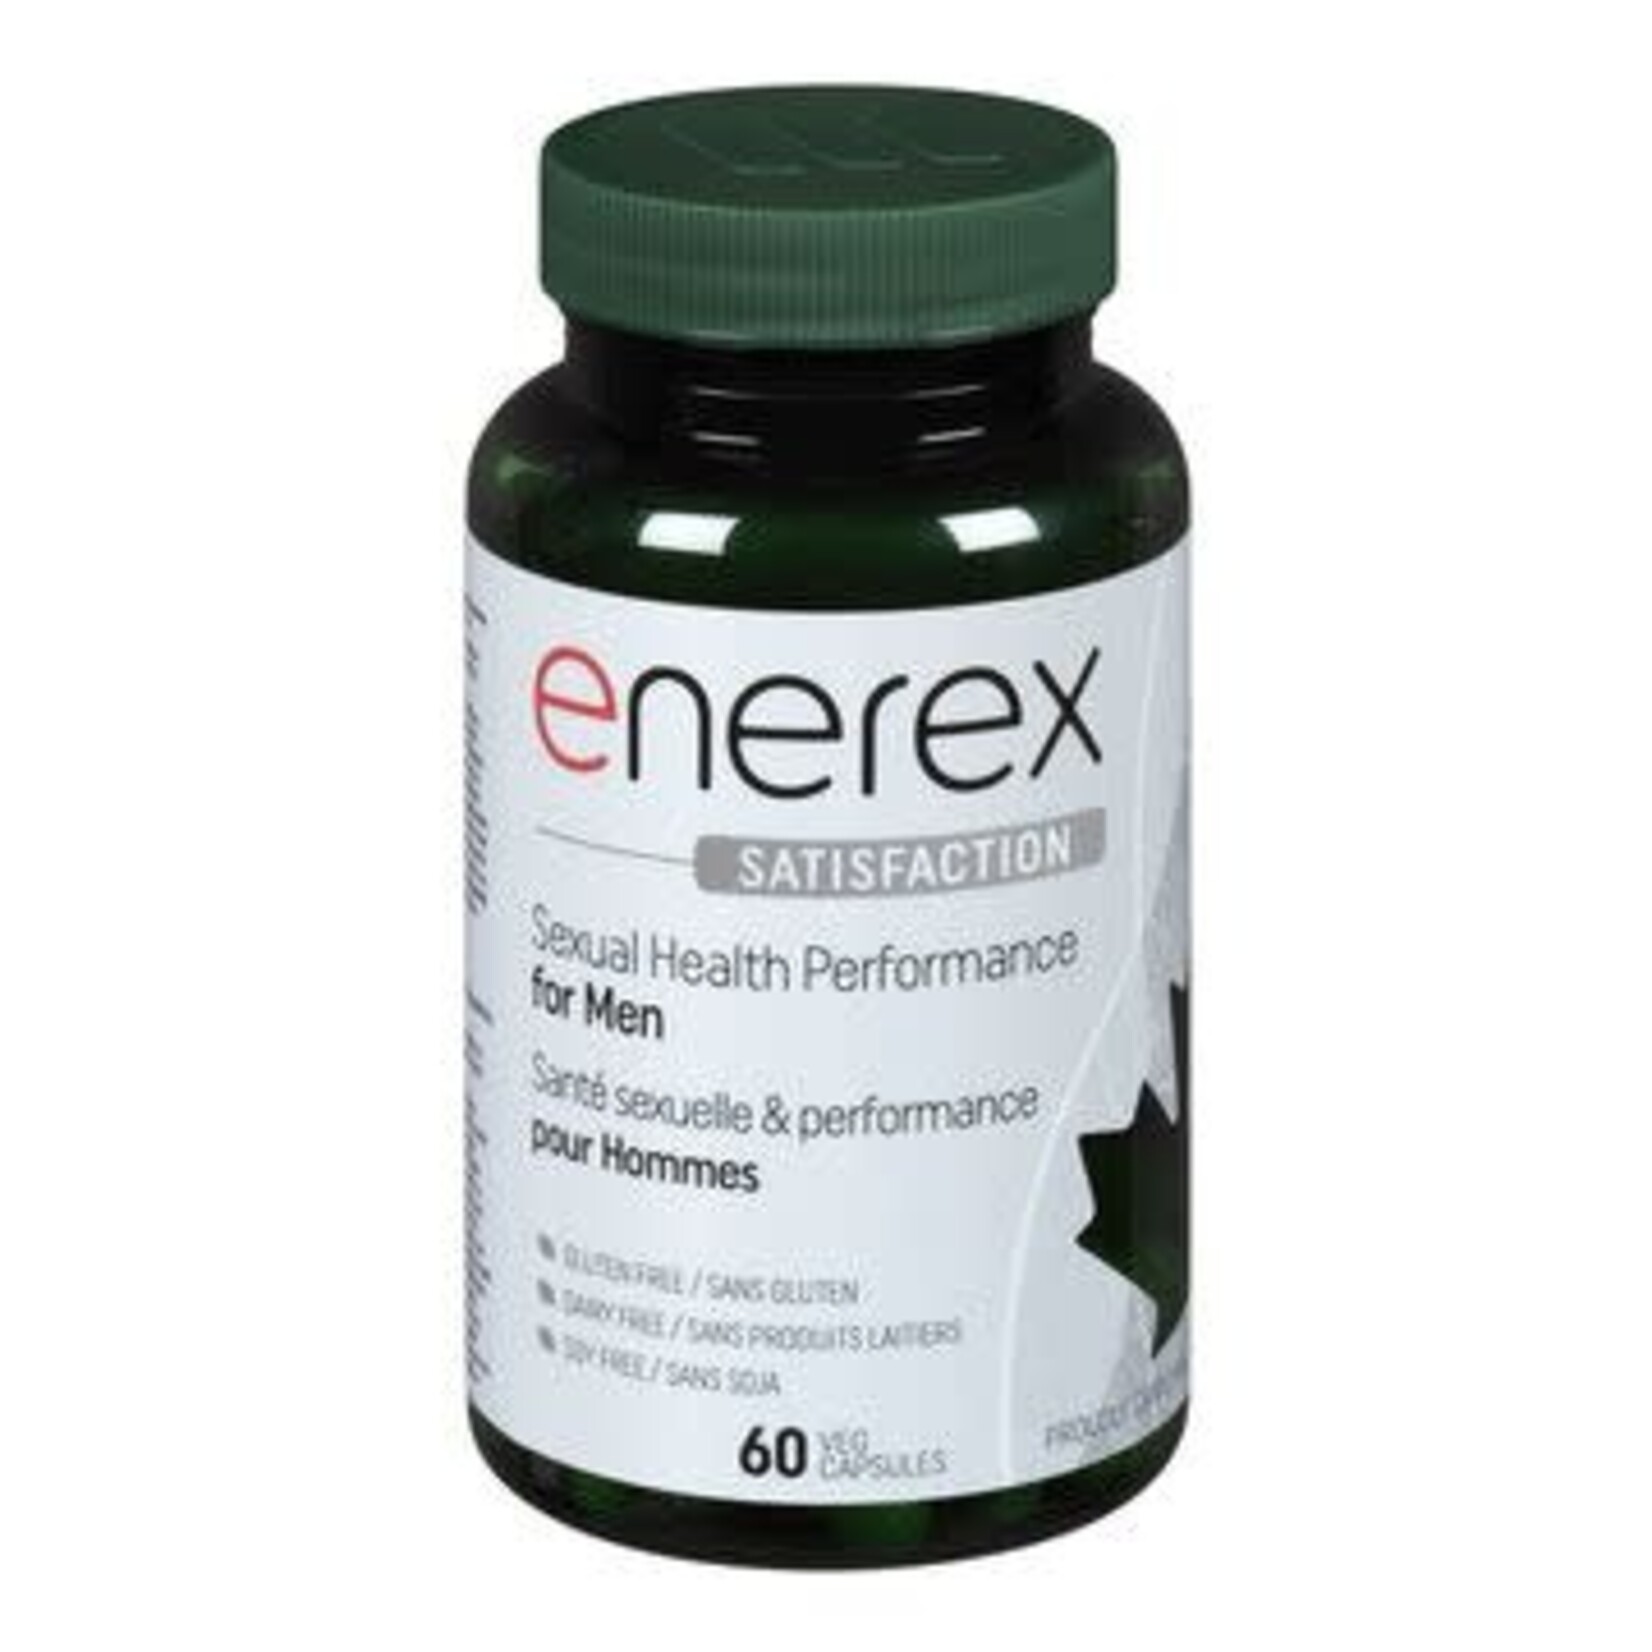 ENEREX ENEREX SATISFACTION FOR MEN 60 CAPS